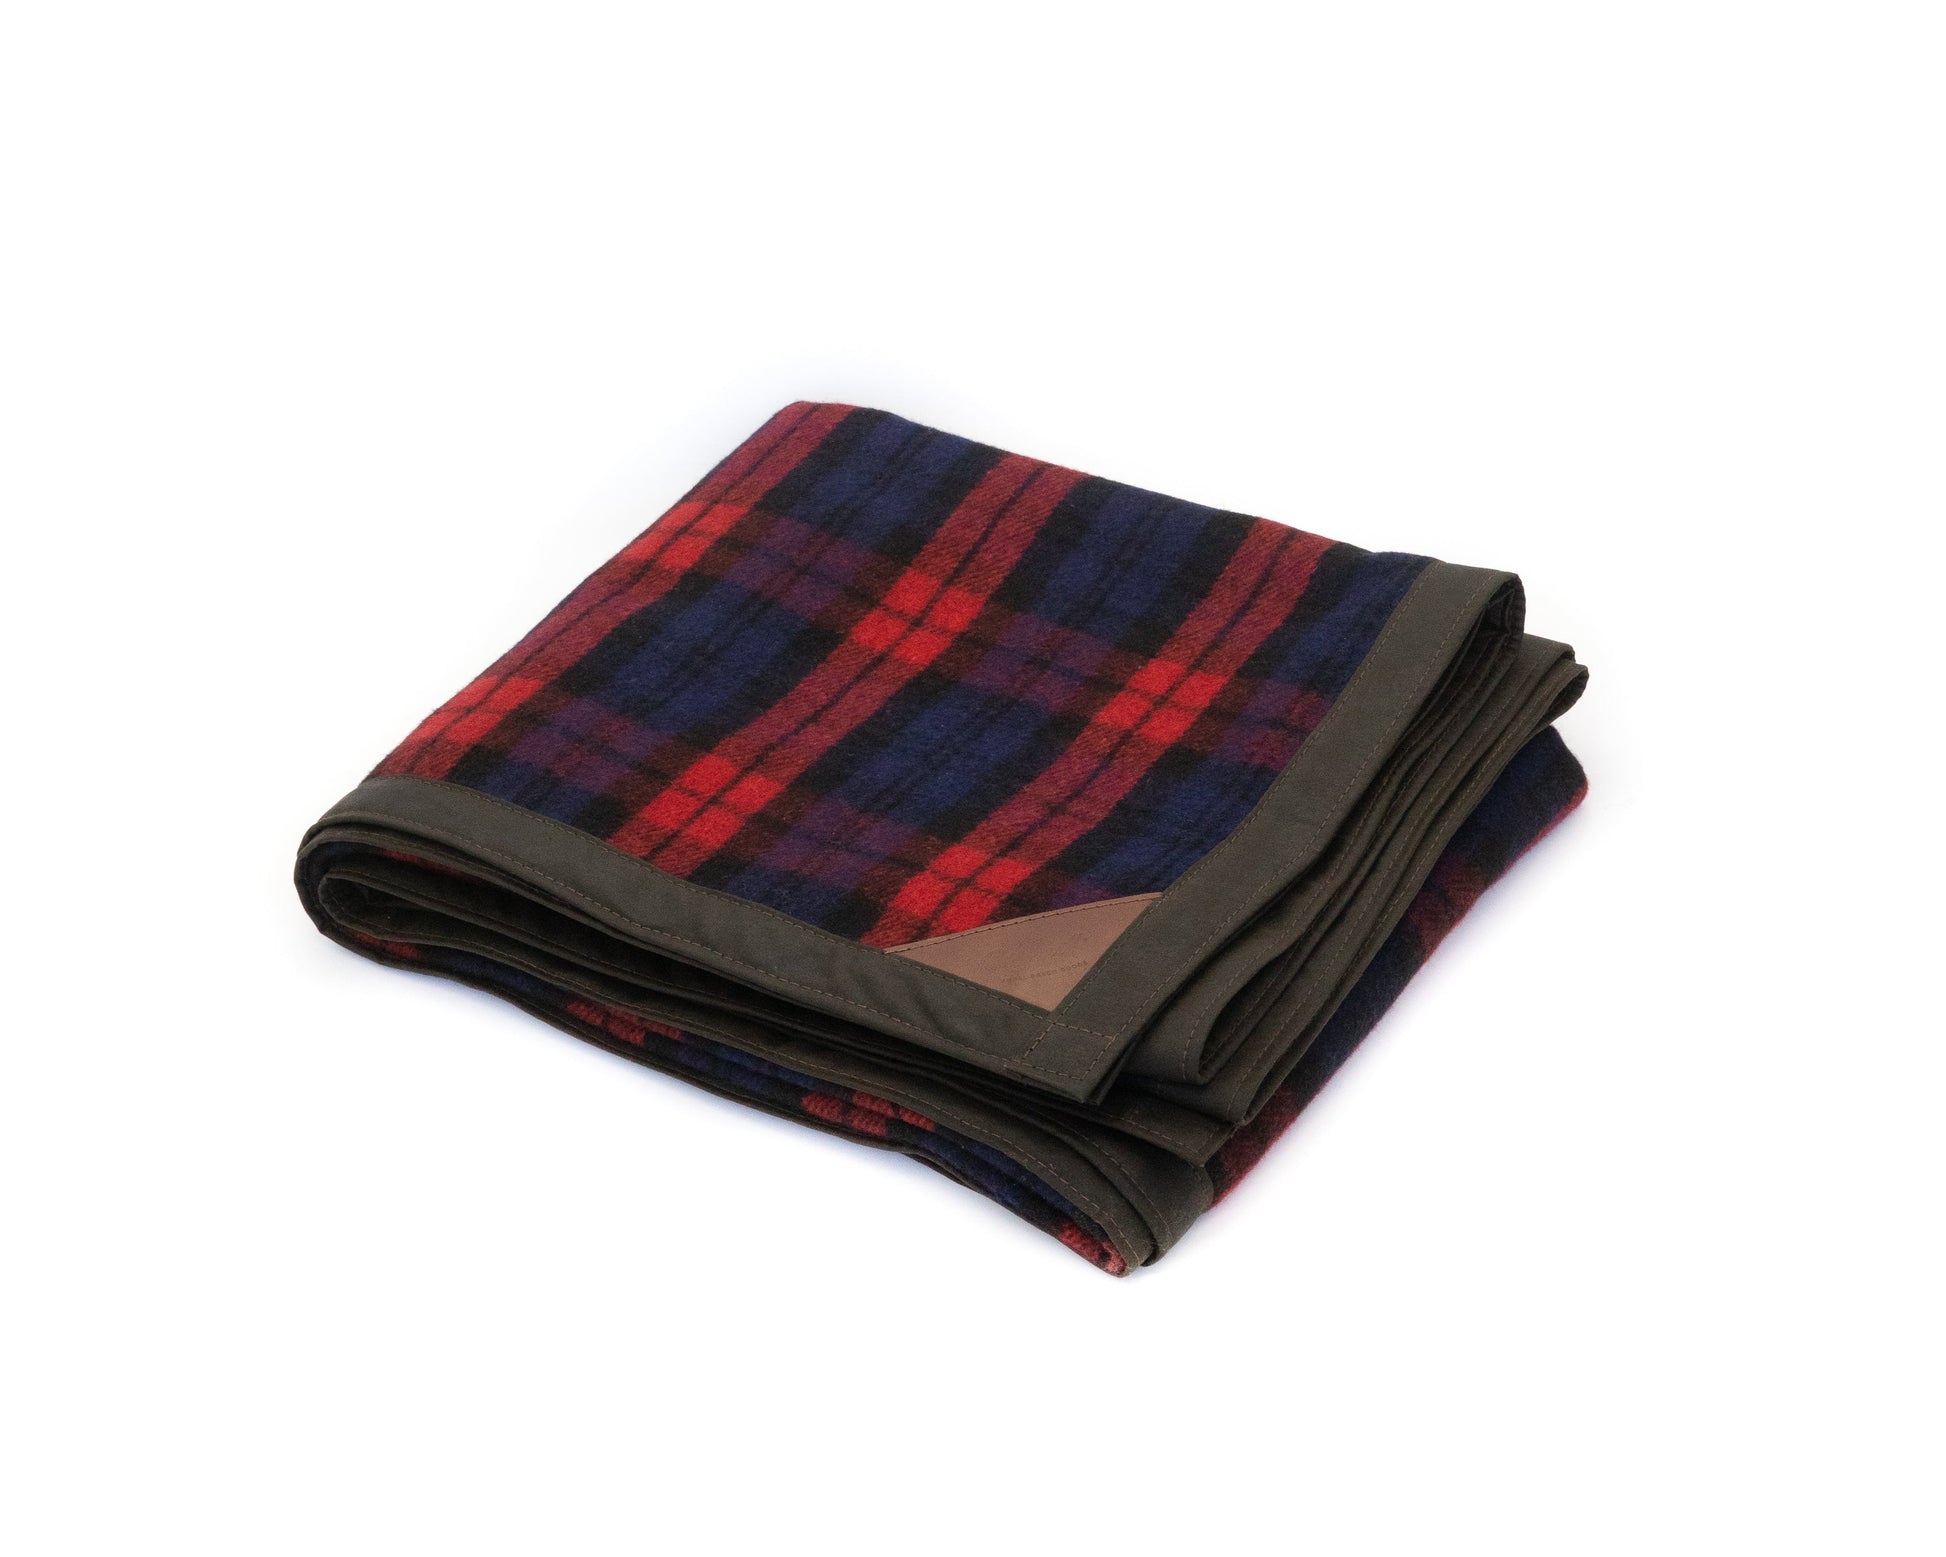 Oilskin & wool blanket in scarlet tartan - Kohutt™ - made in Tasmania